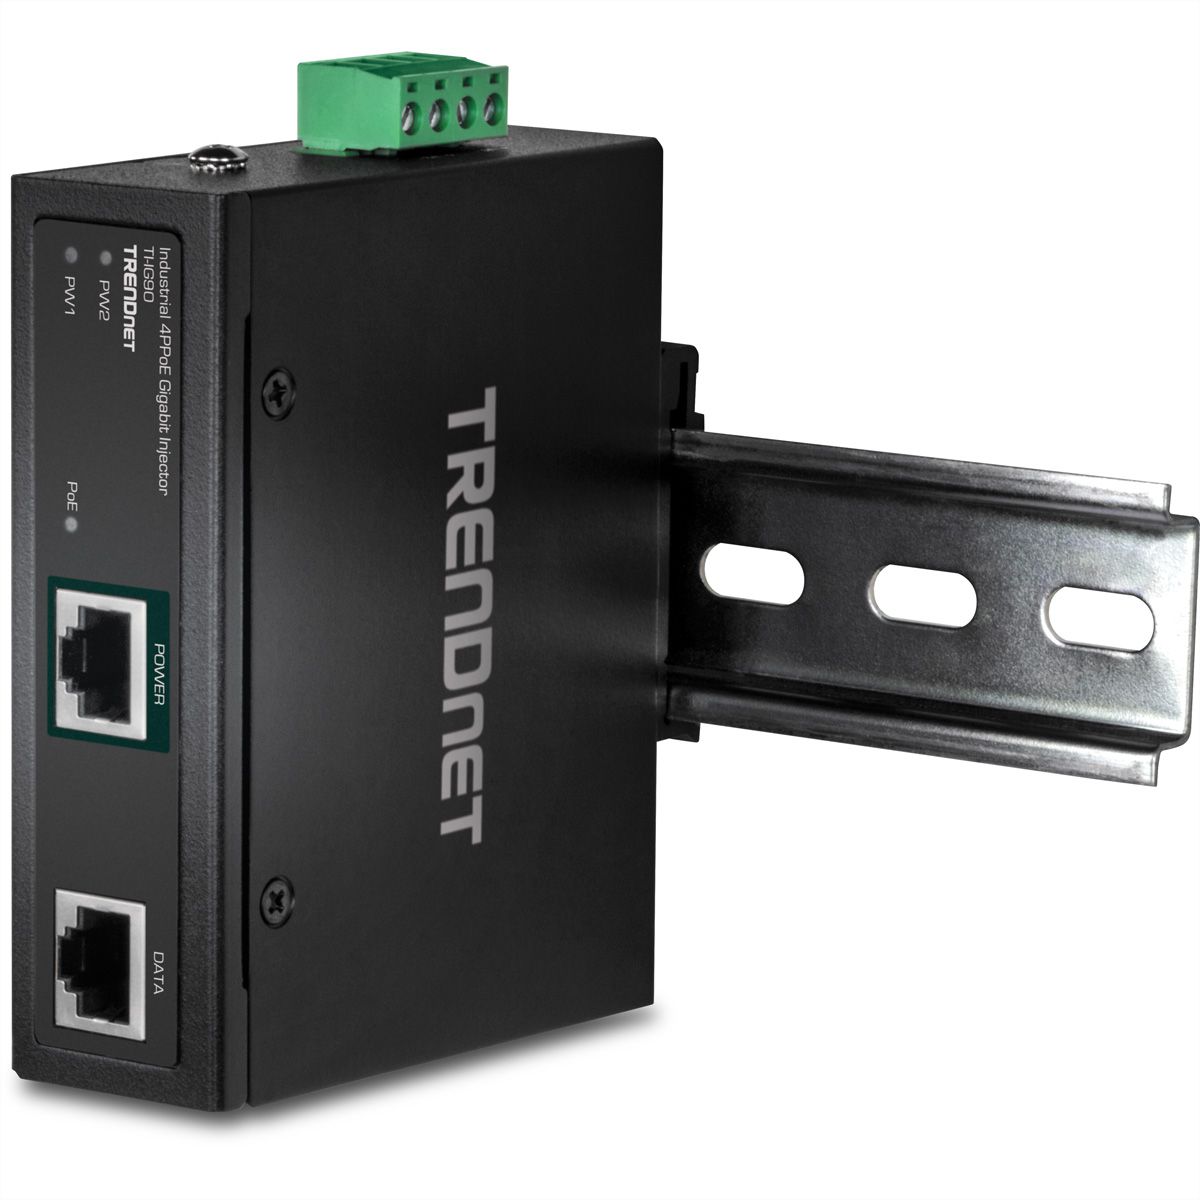 ROLINE Injecteur PoE Gigabit Ethernet, 4 ports - SECOMP France